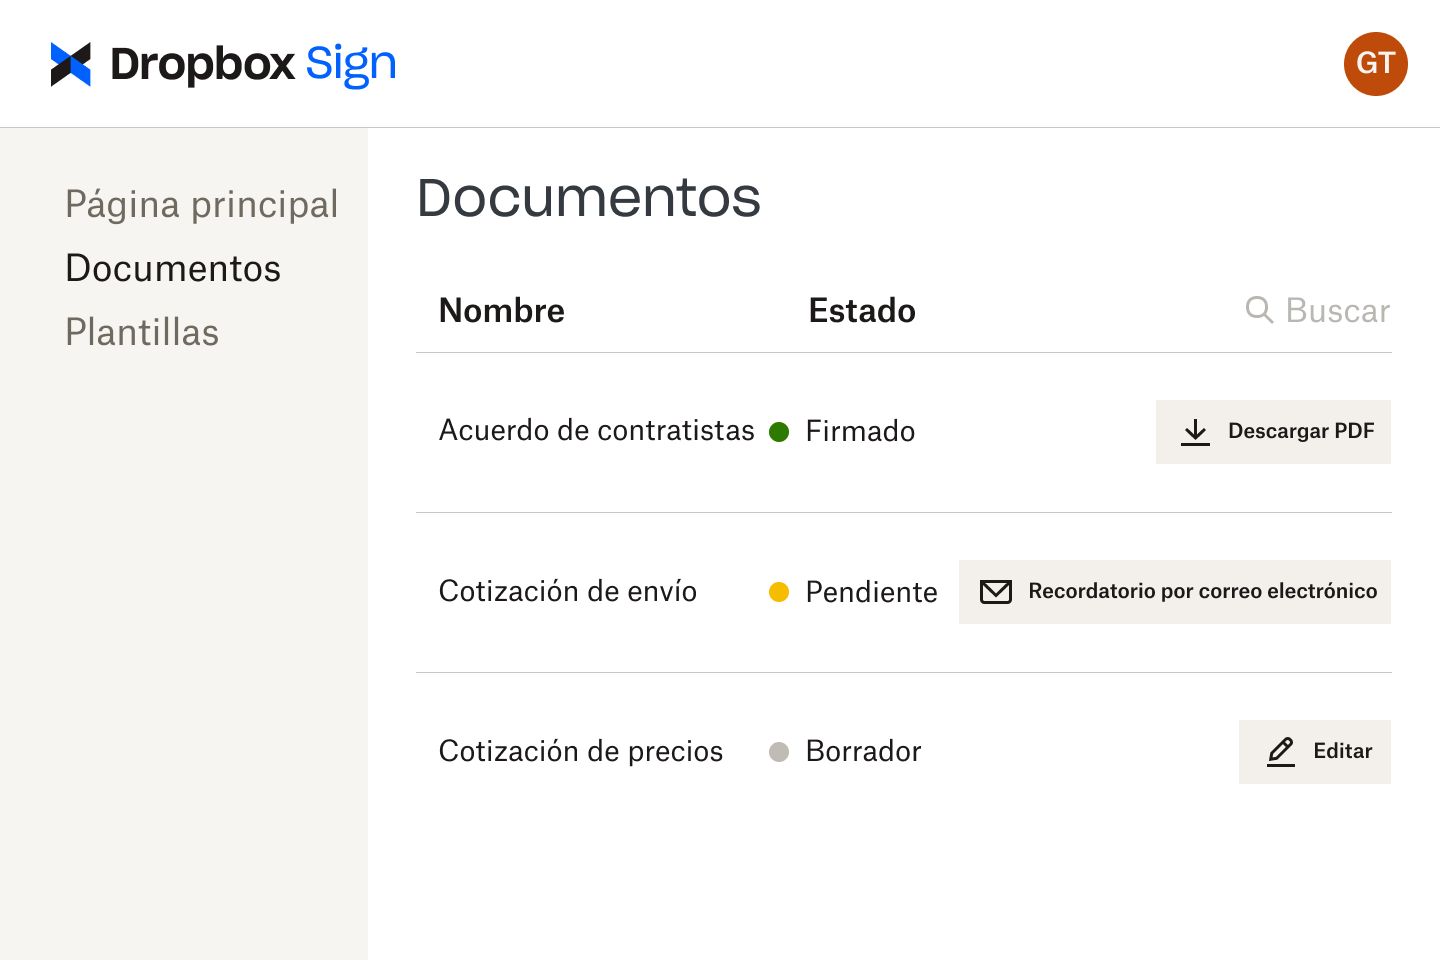 Documentos en la interfaz de Dropbox Sign en varias etapas de revisión